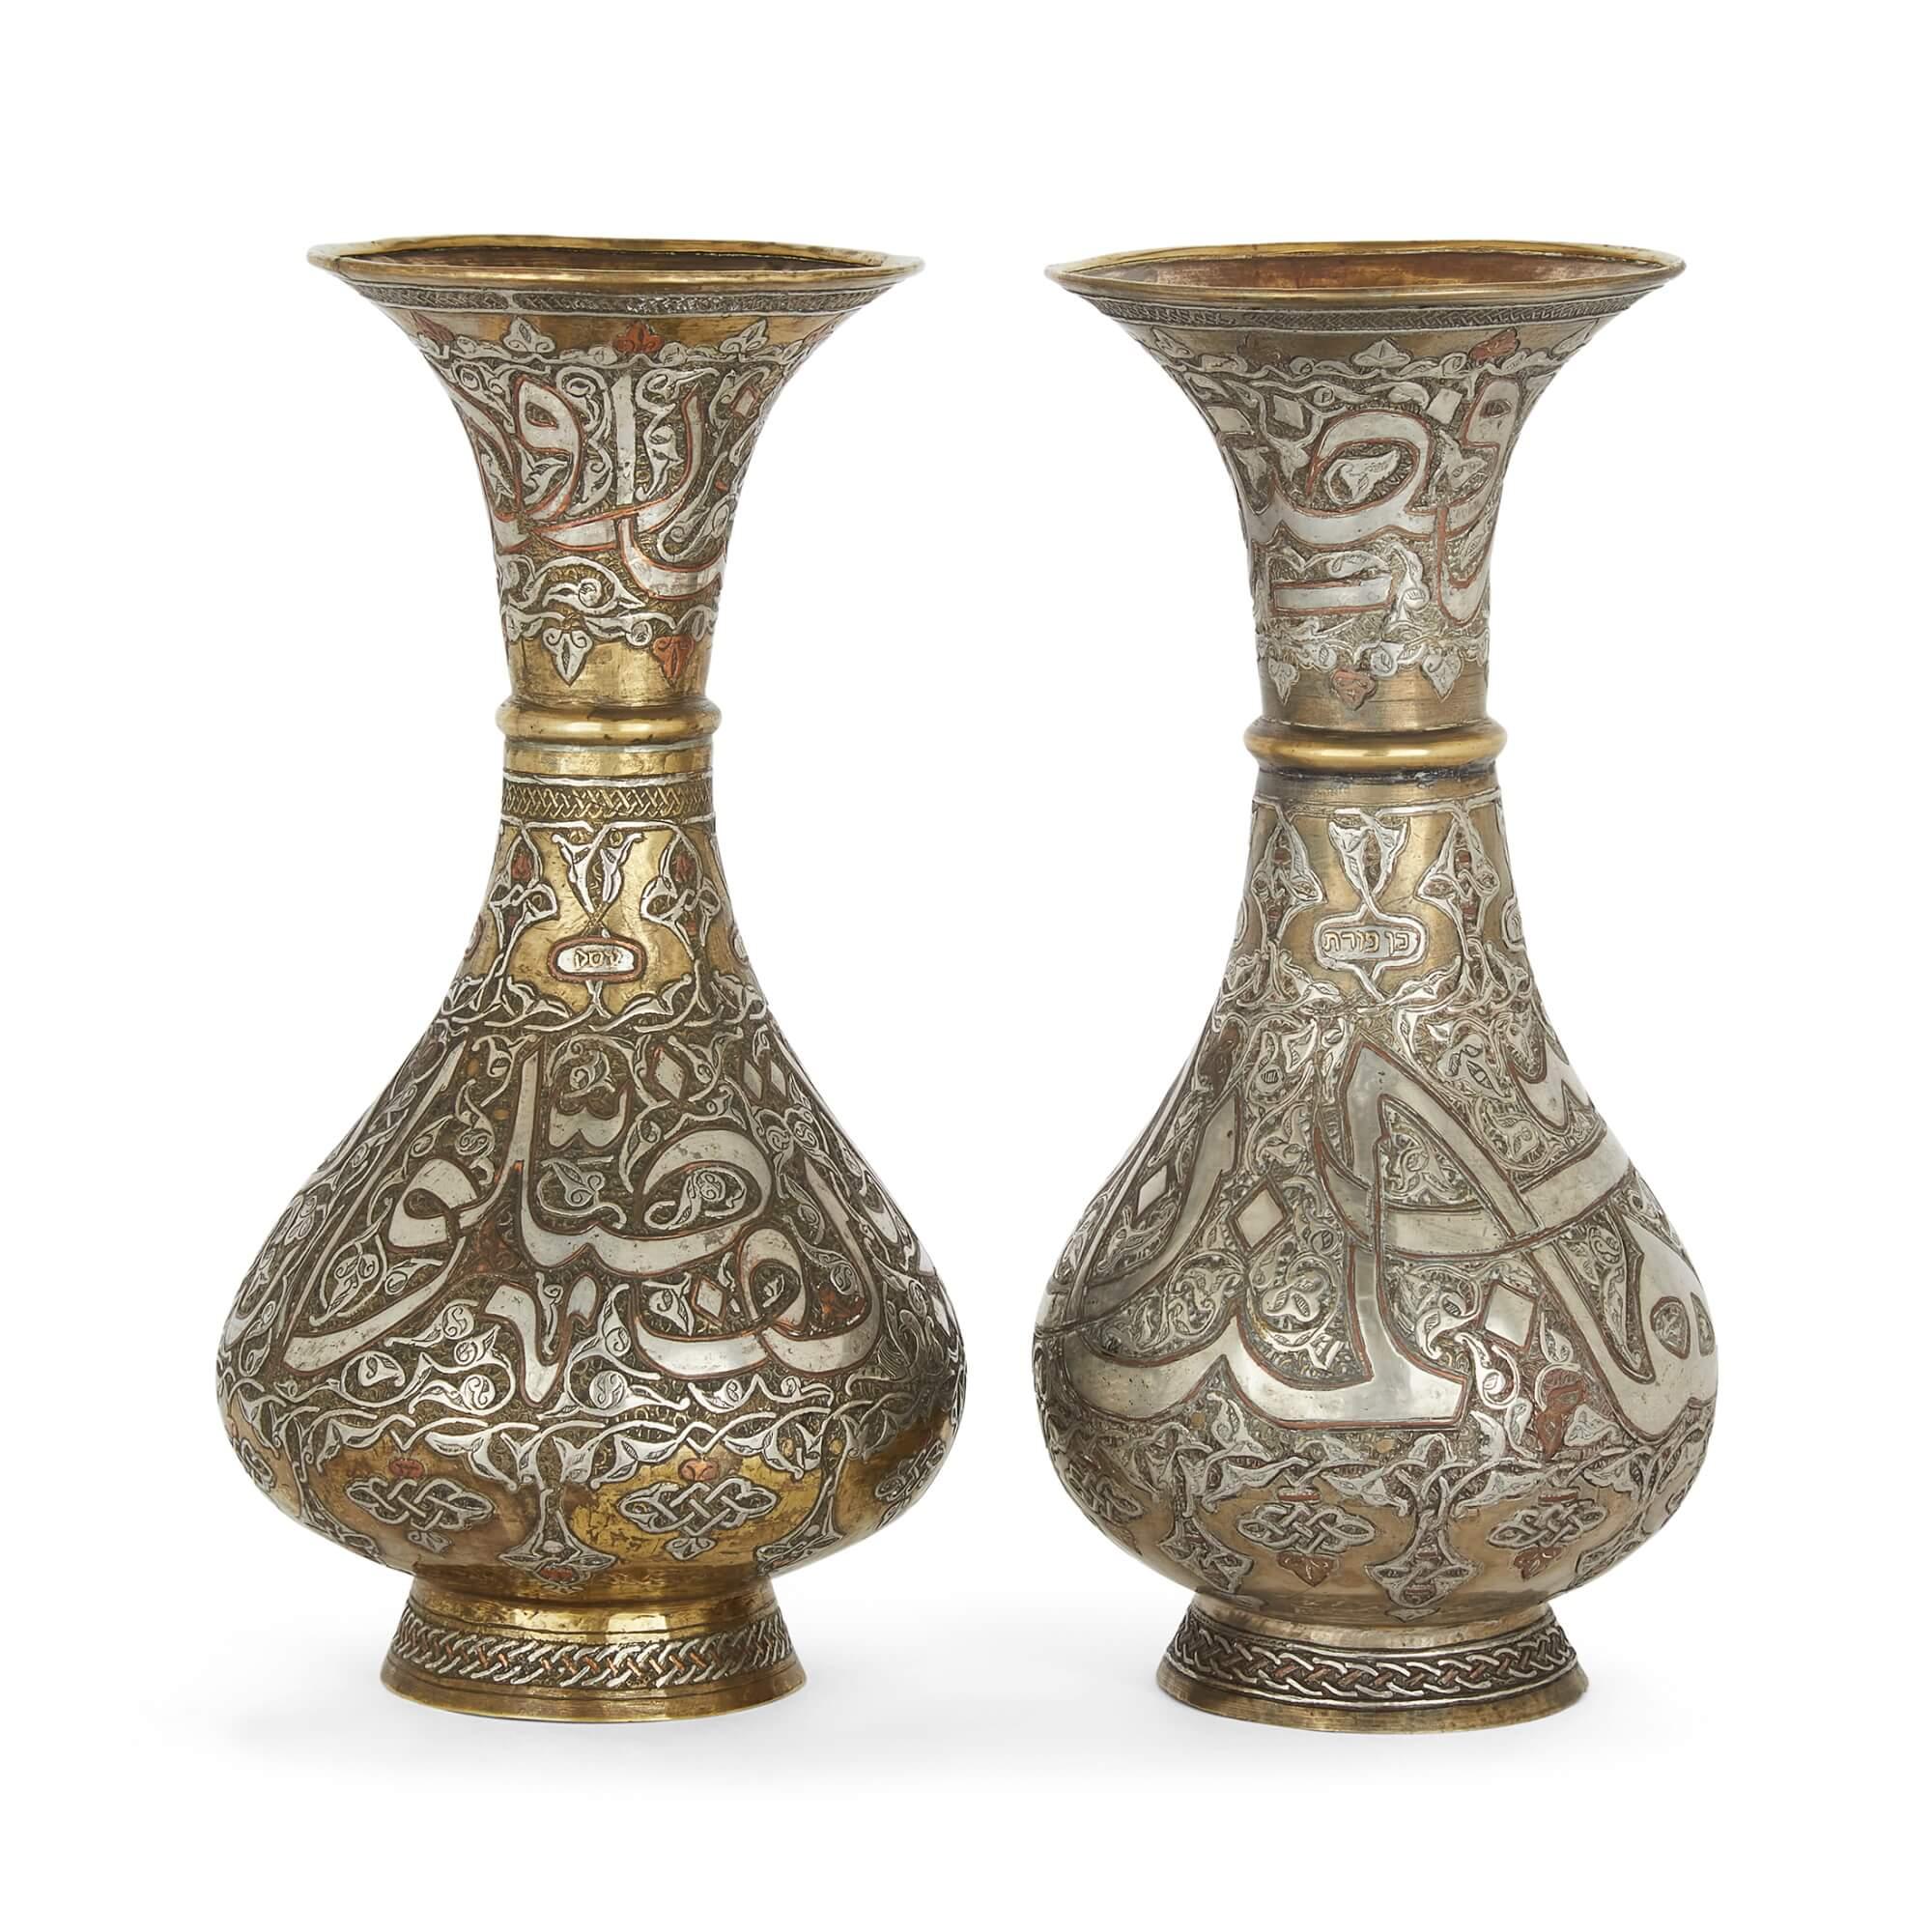 Ein Paar syrische Mamlukenvasen aus Messing mit Silber- und Kupfereinlage
Syrisch, 20. Jahrhundert
28 cm hoch x 14 cm im Durchmesser.

Diese ausgezeichneten Vasen stammen aus der Zeit der Mamluken, die sich stark von der Mamluken-Periode